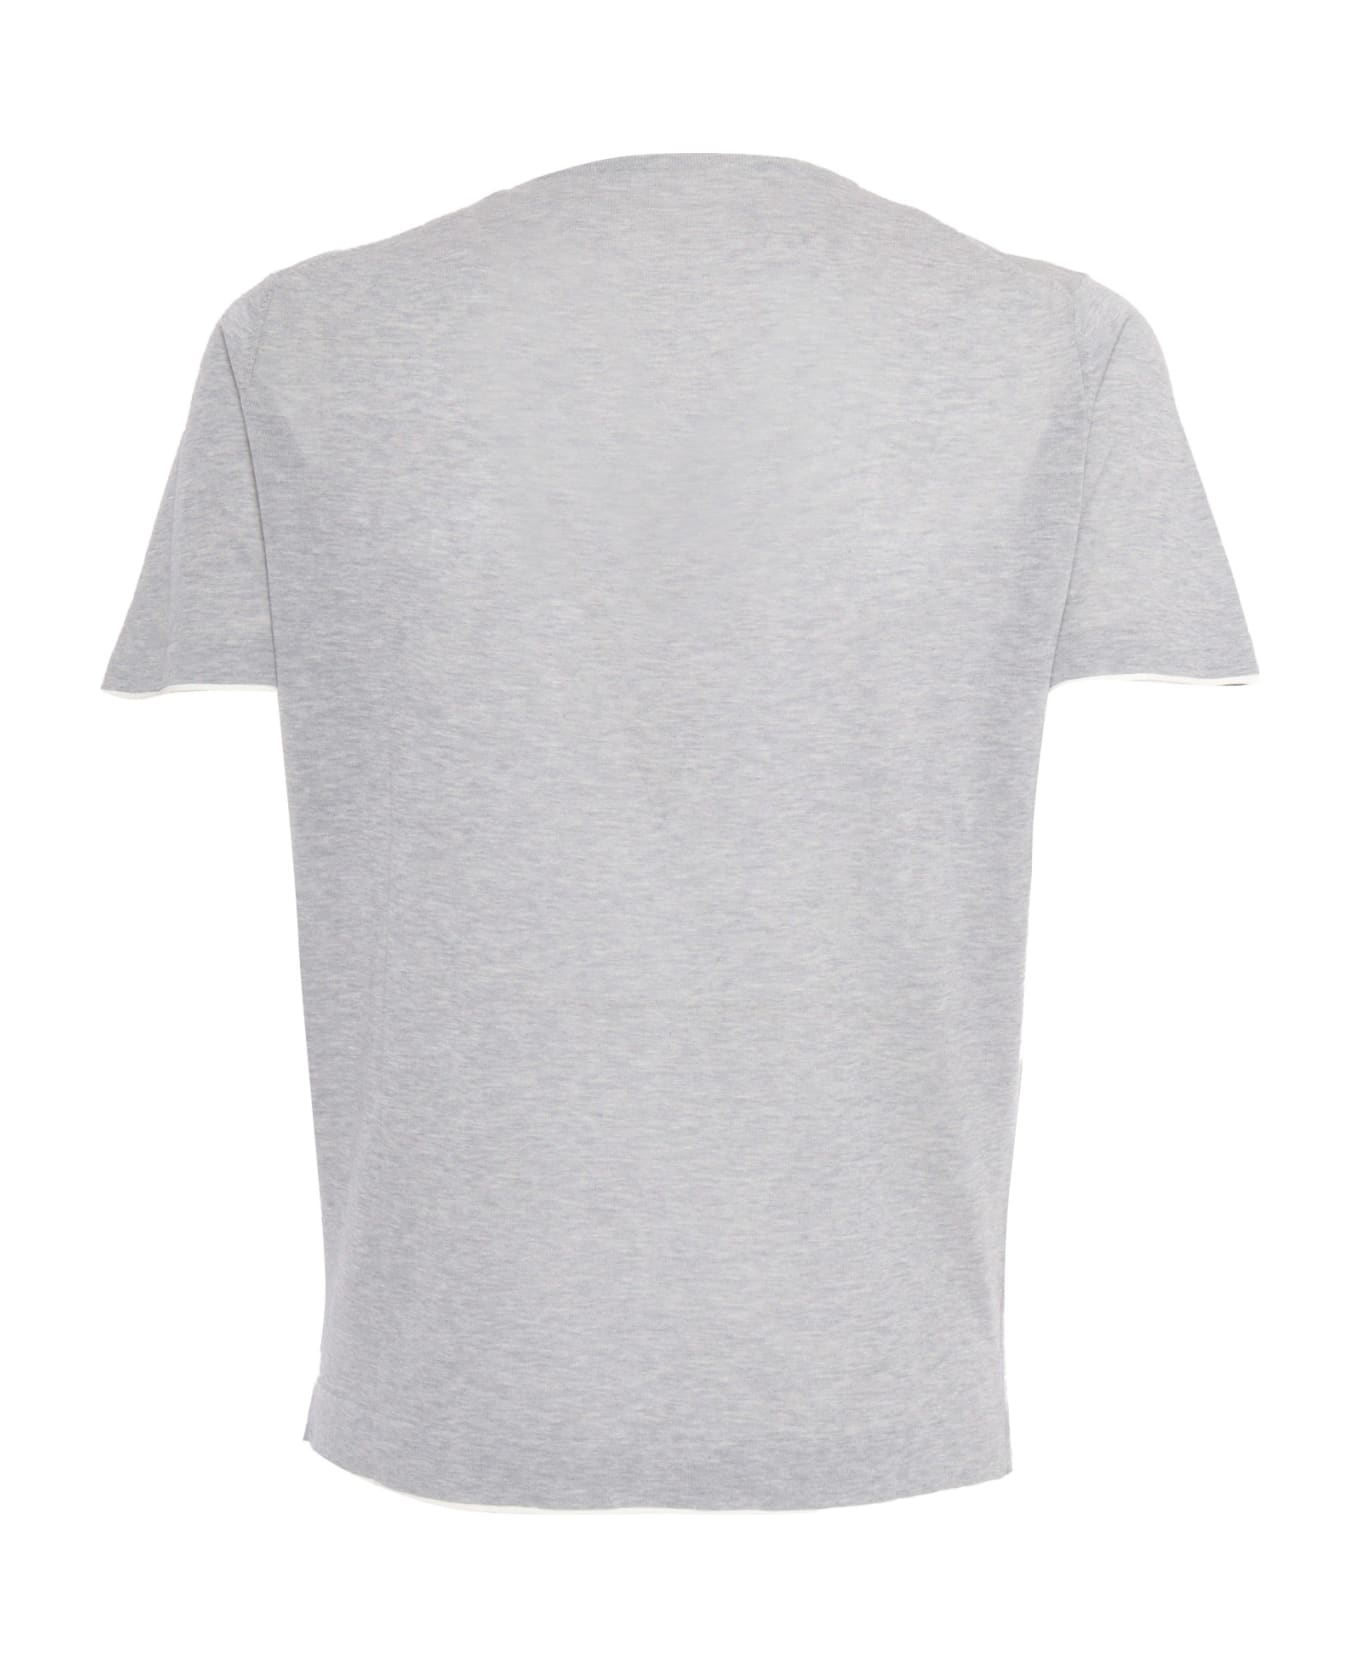 L.B.M. 1911 Gray Stretch Cotton T-shirt - GREY